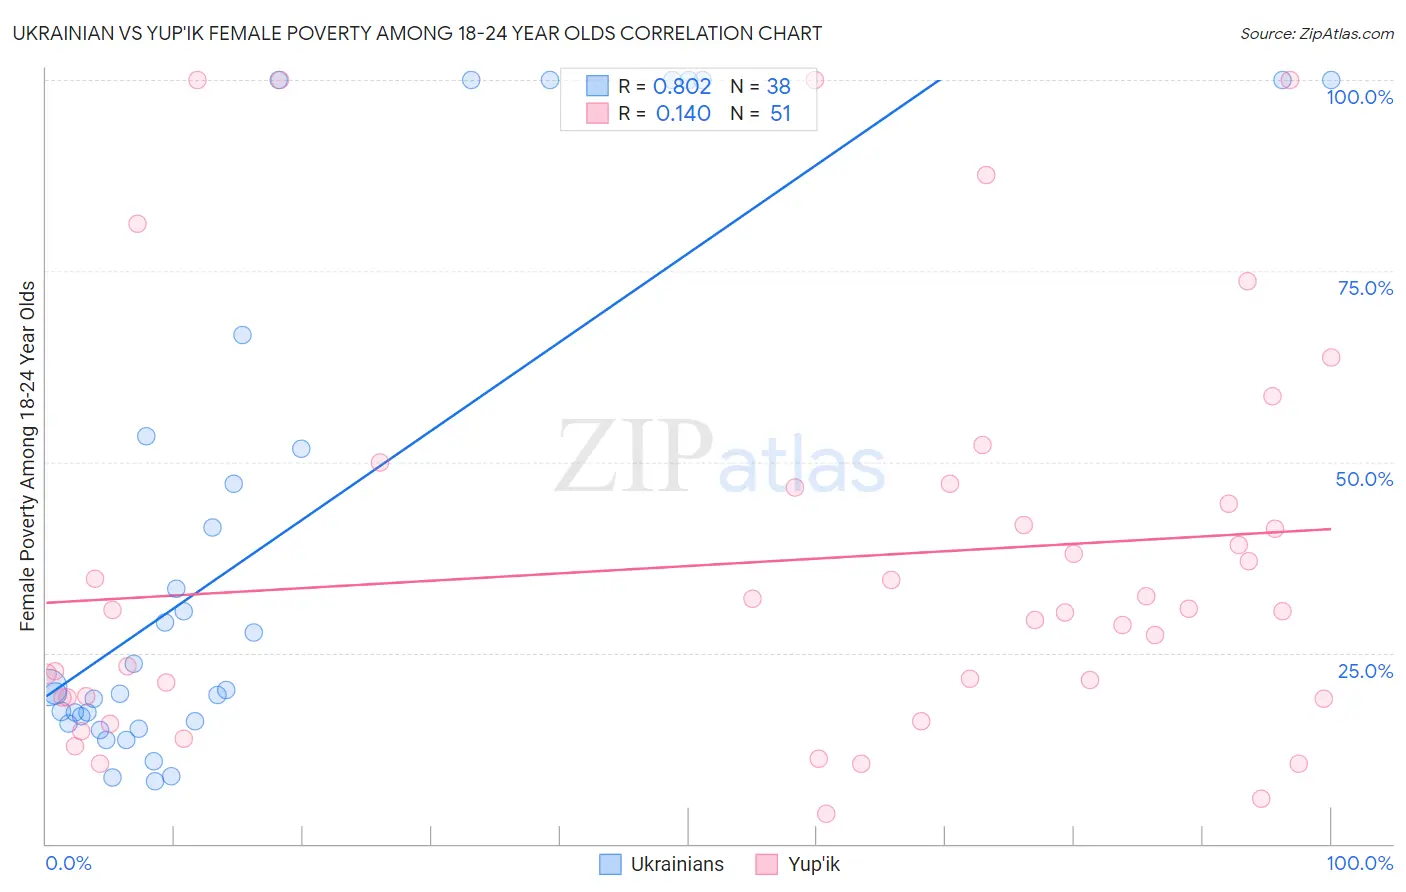 Ukrainian vs Yup'ik Female Poverty Among 18-24 Year Olds